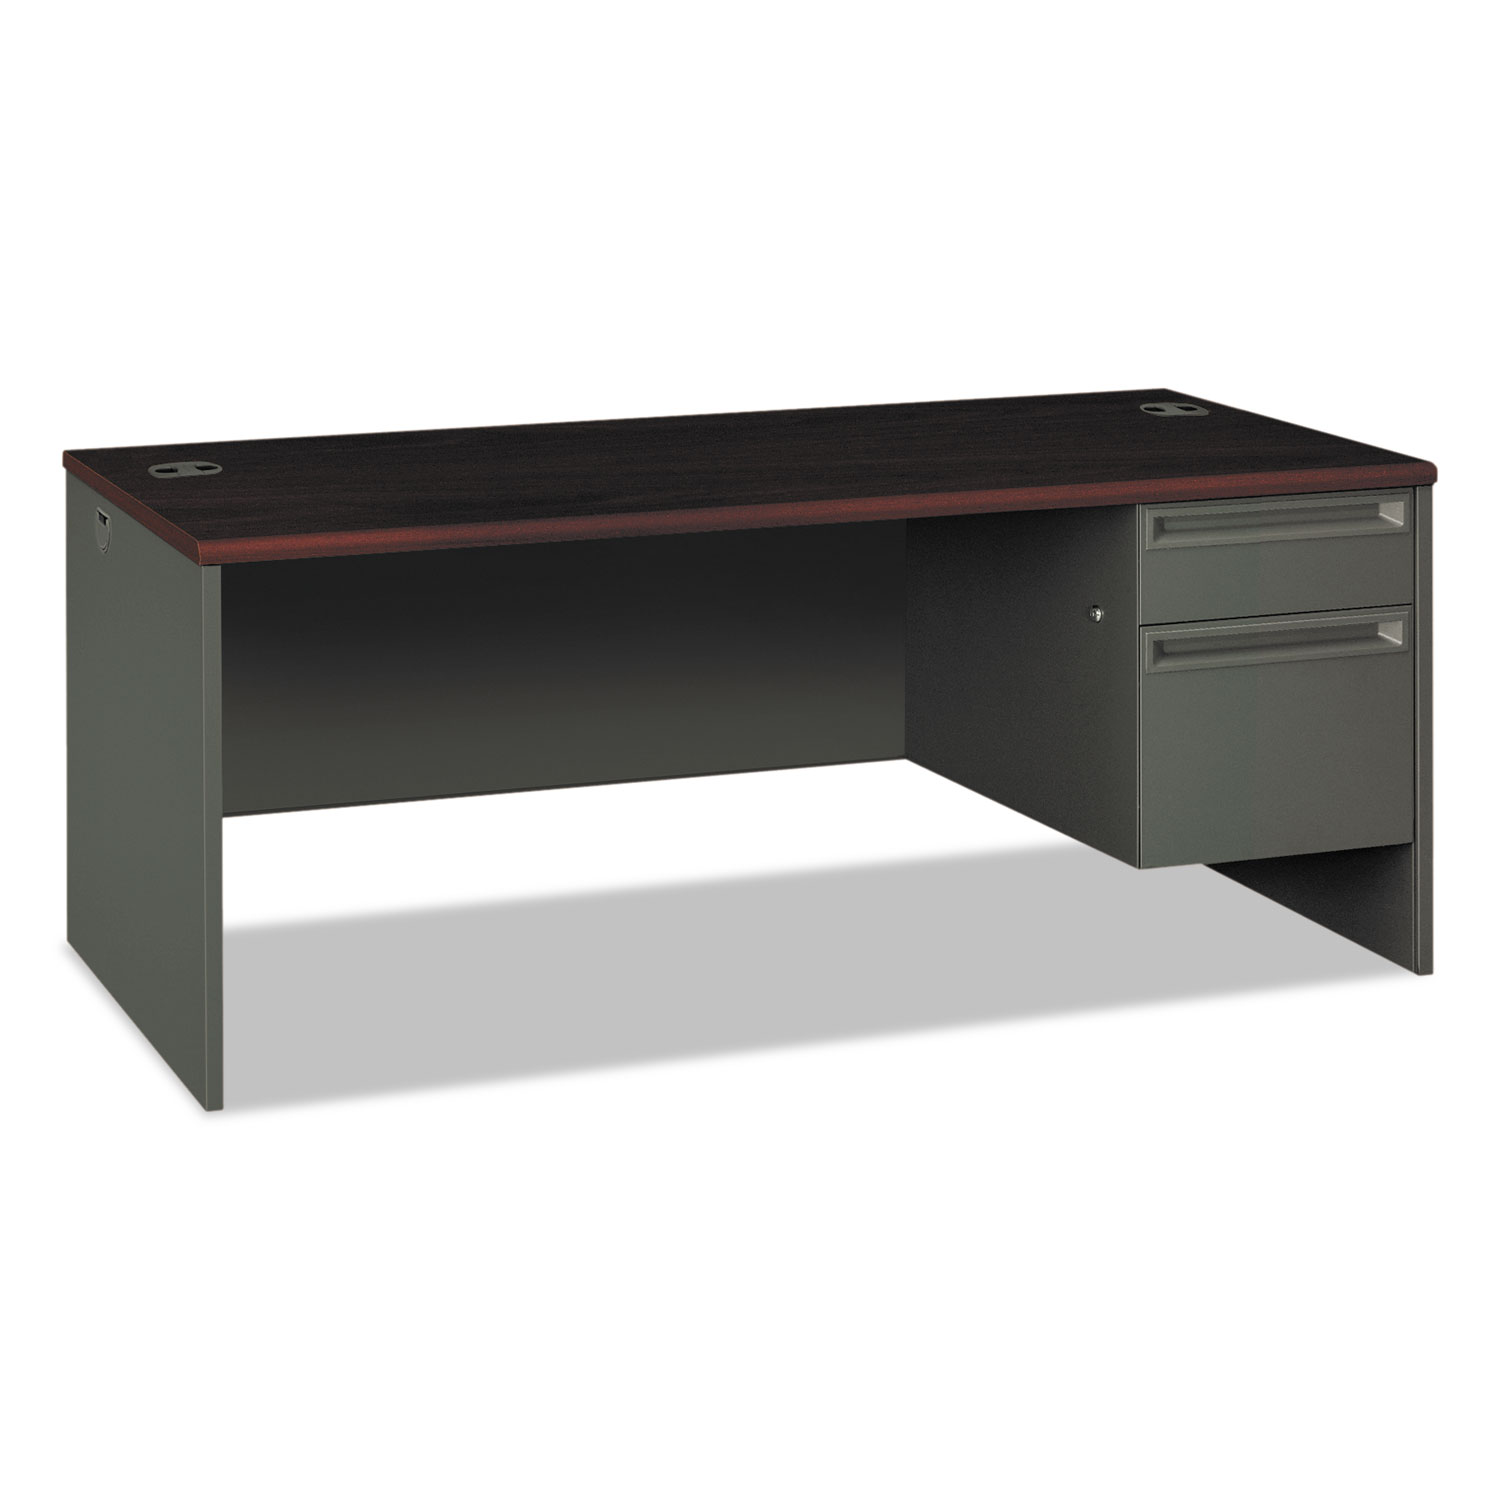 HON HON38293RNS 38000 Series Right Pedestal Desk, 72w x 36d x 29-1/2h, Mahogany/Charcoal